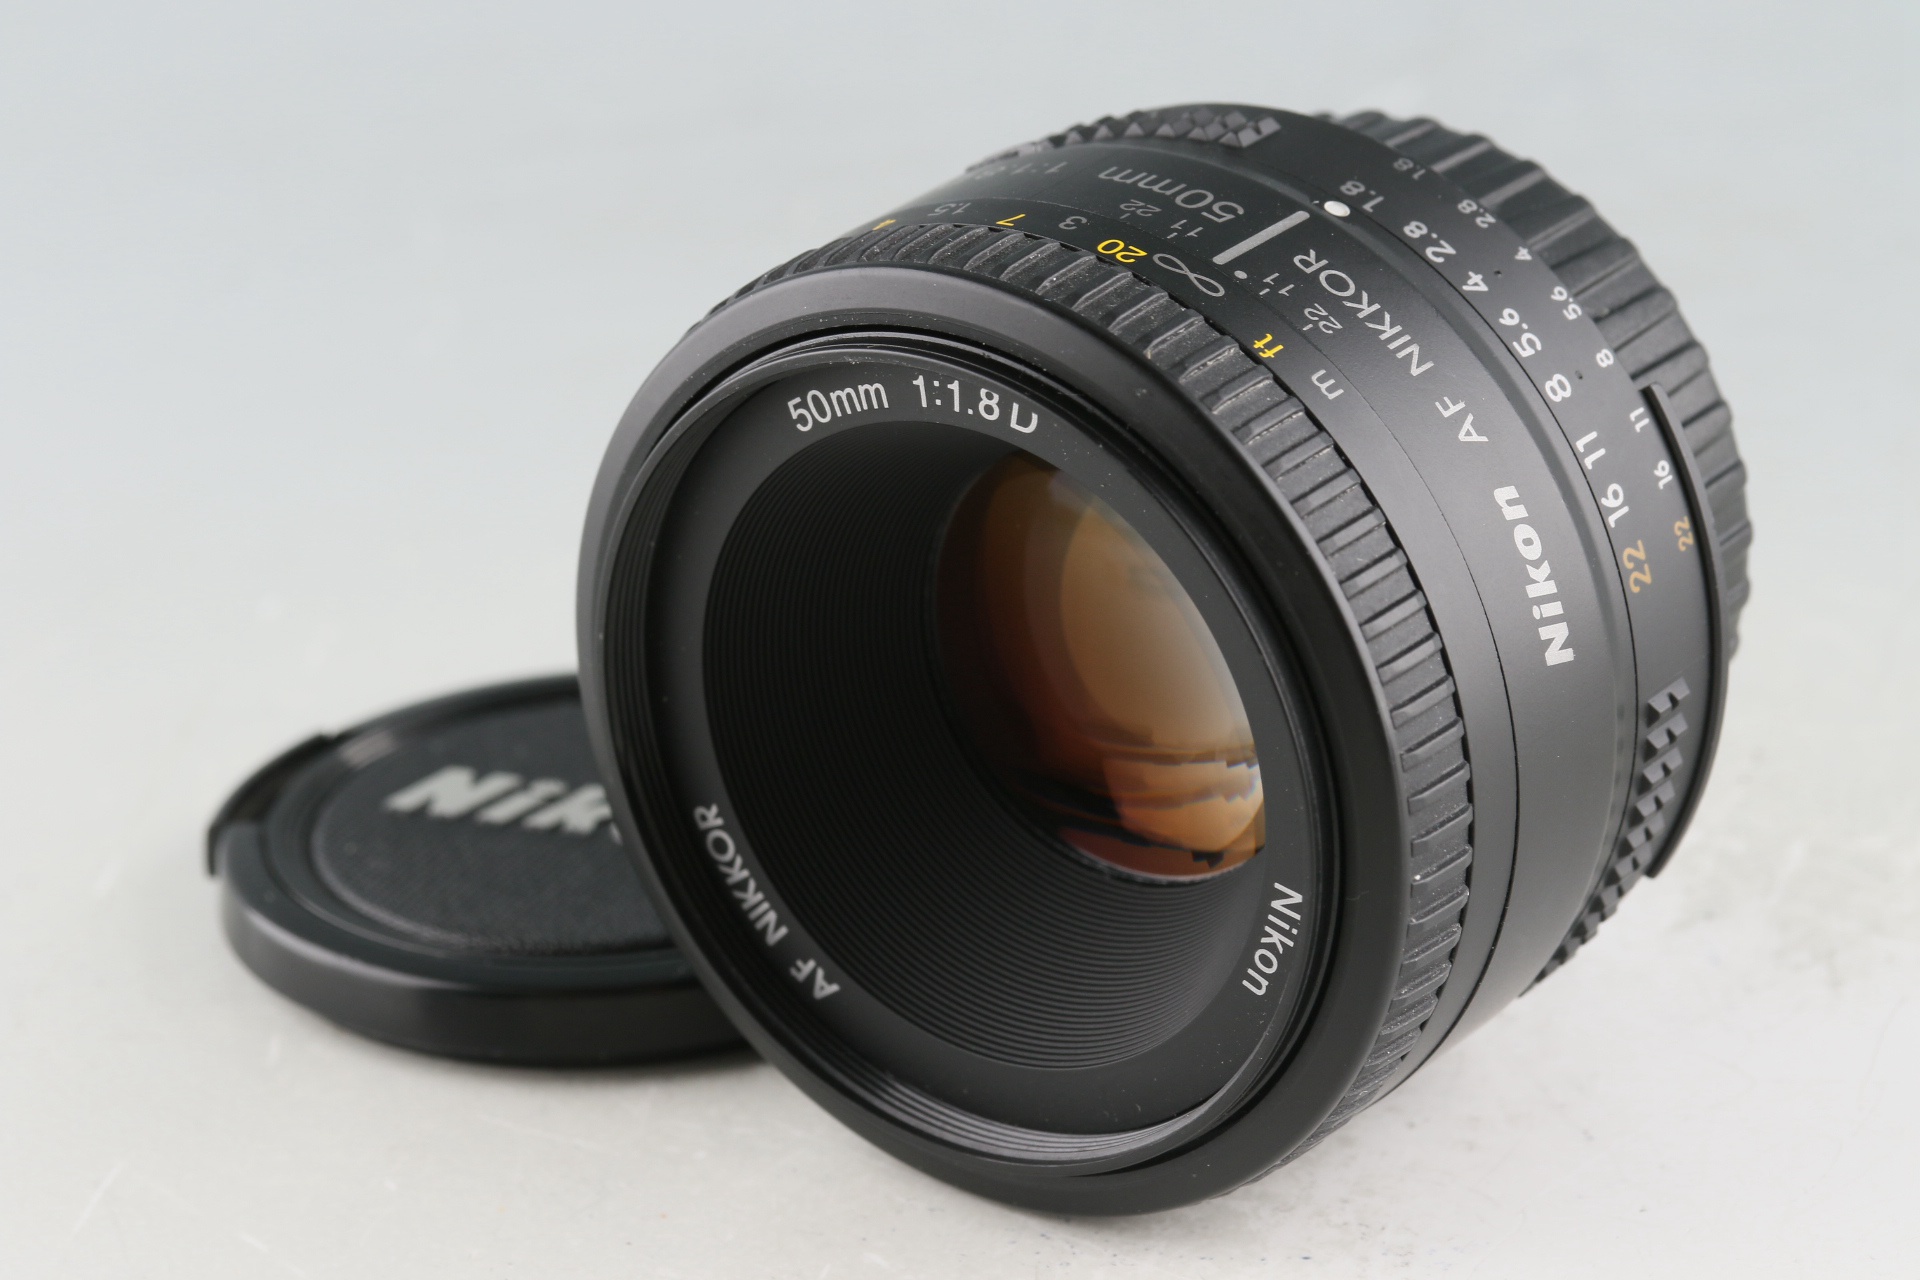 Nikon AF Nikkor 50mm F/1.8 D Lens #52986H21